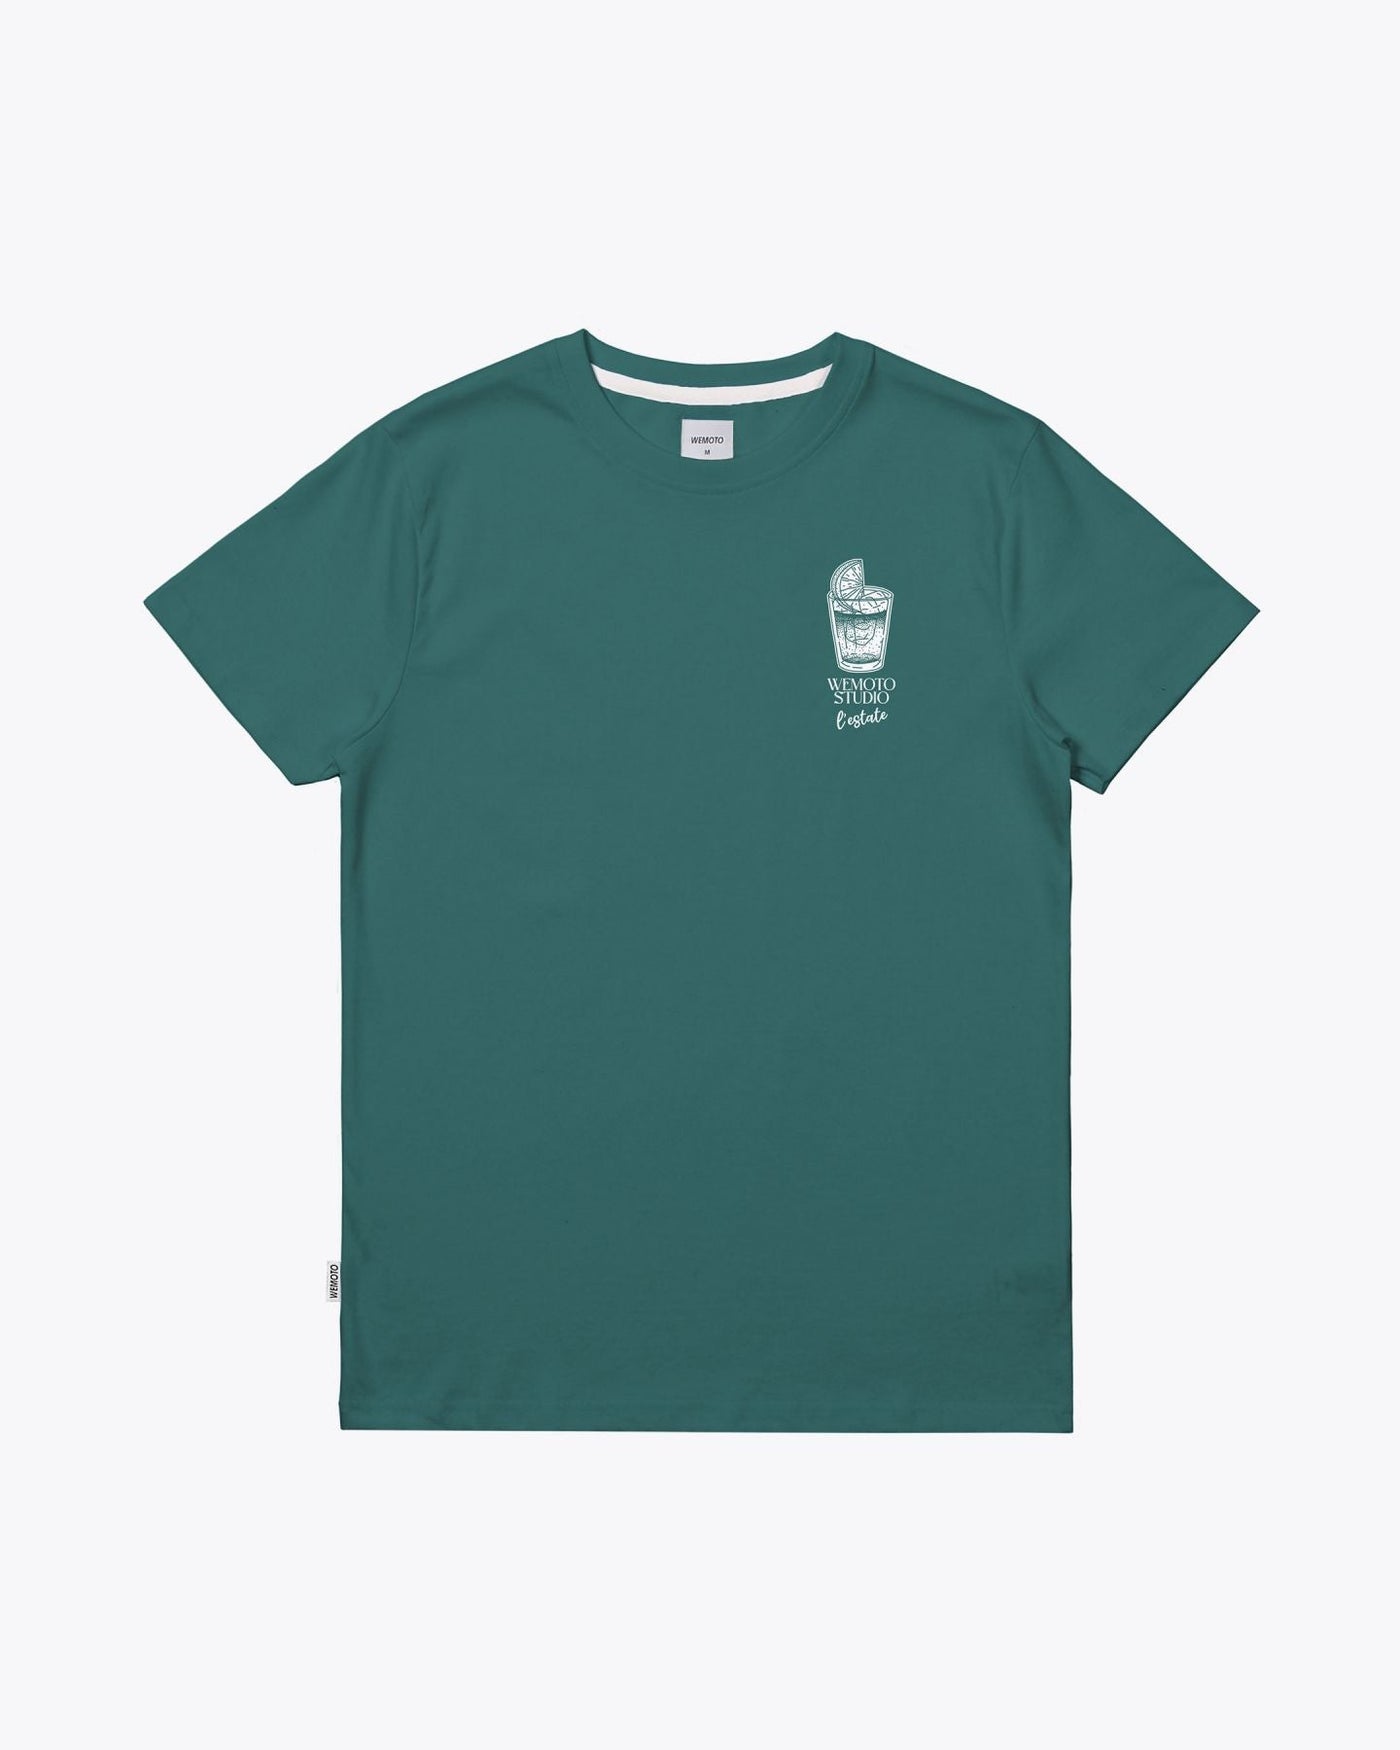 Wemoto T-shirt Estate Tee - Printed T-Shirt Teal